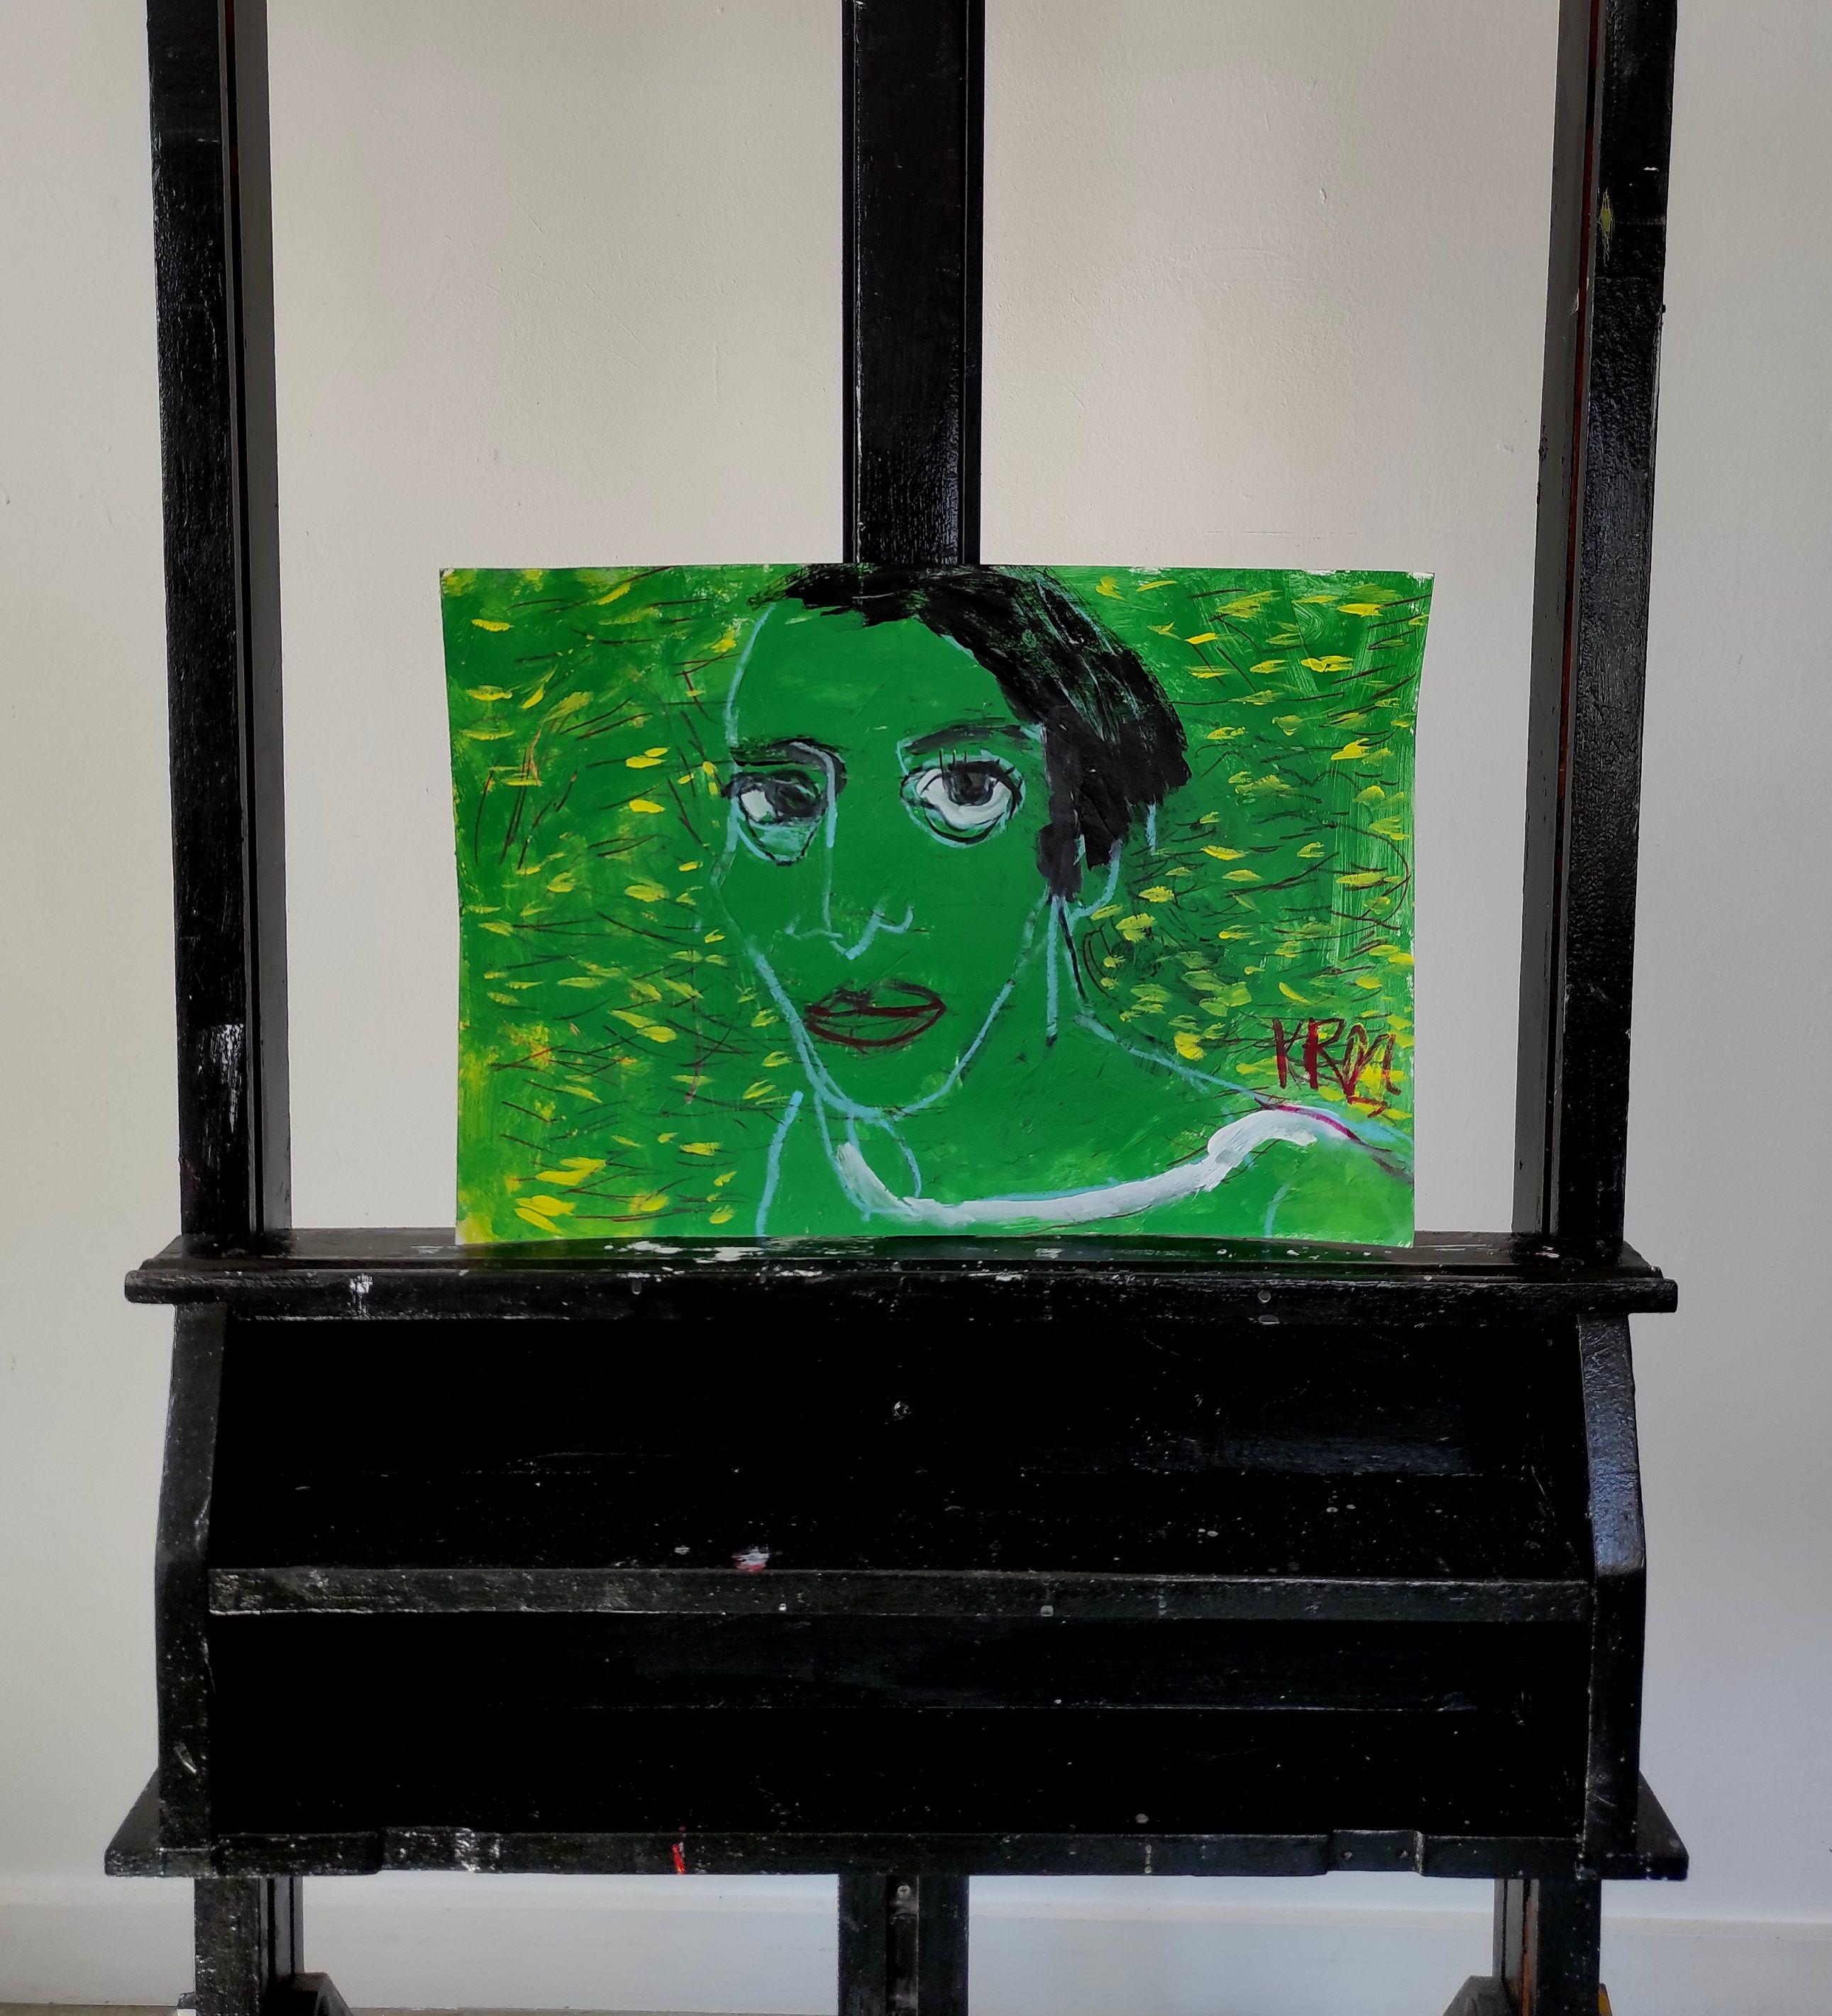 Grünes Porträt, Mischtechnik auf Papier (Expressionismus), Mixed Media Art, von Barbara Kroll